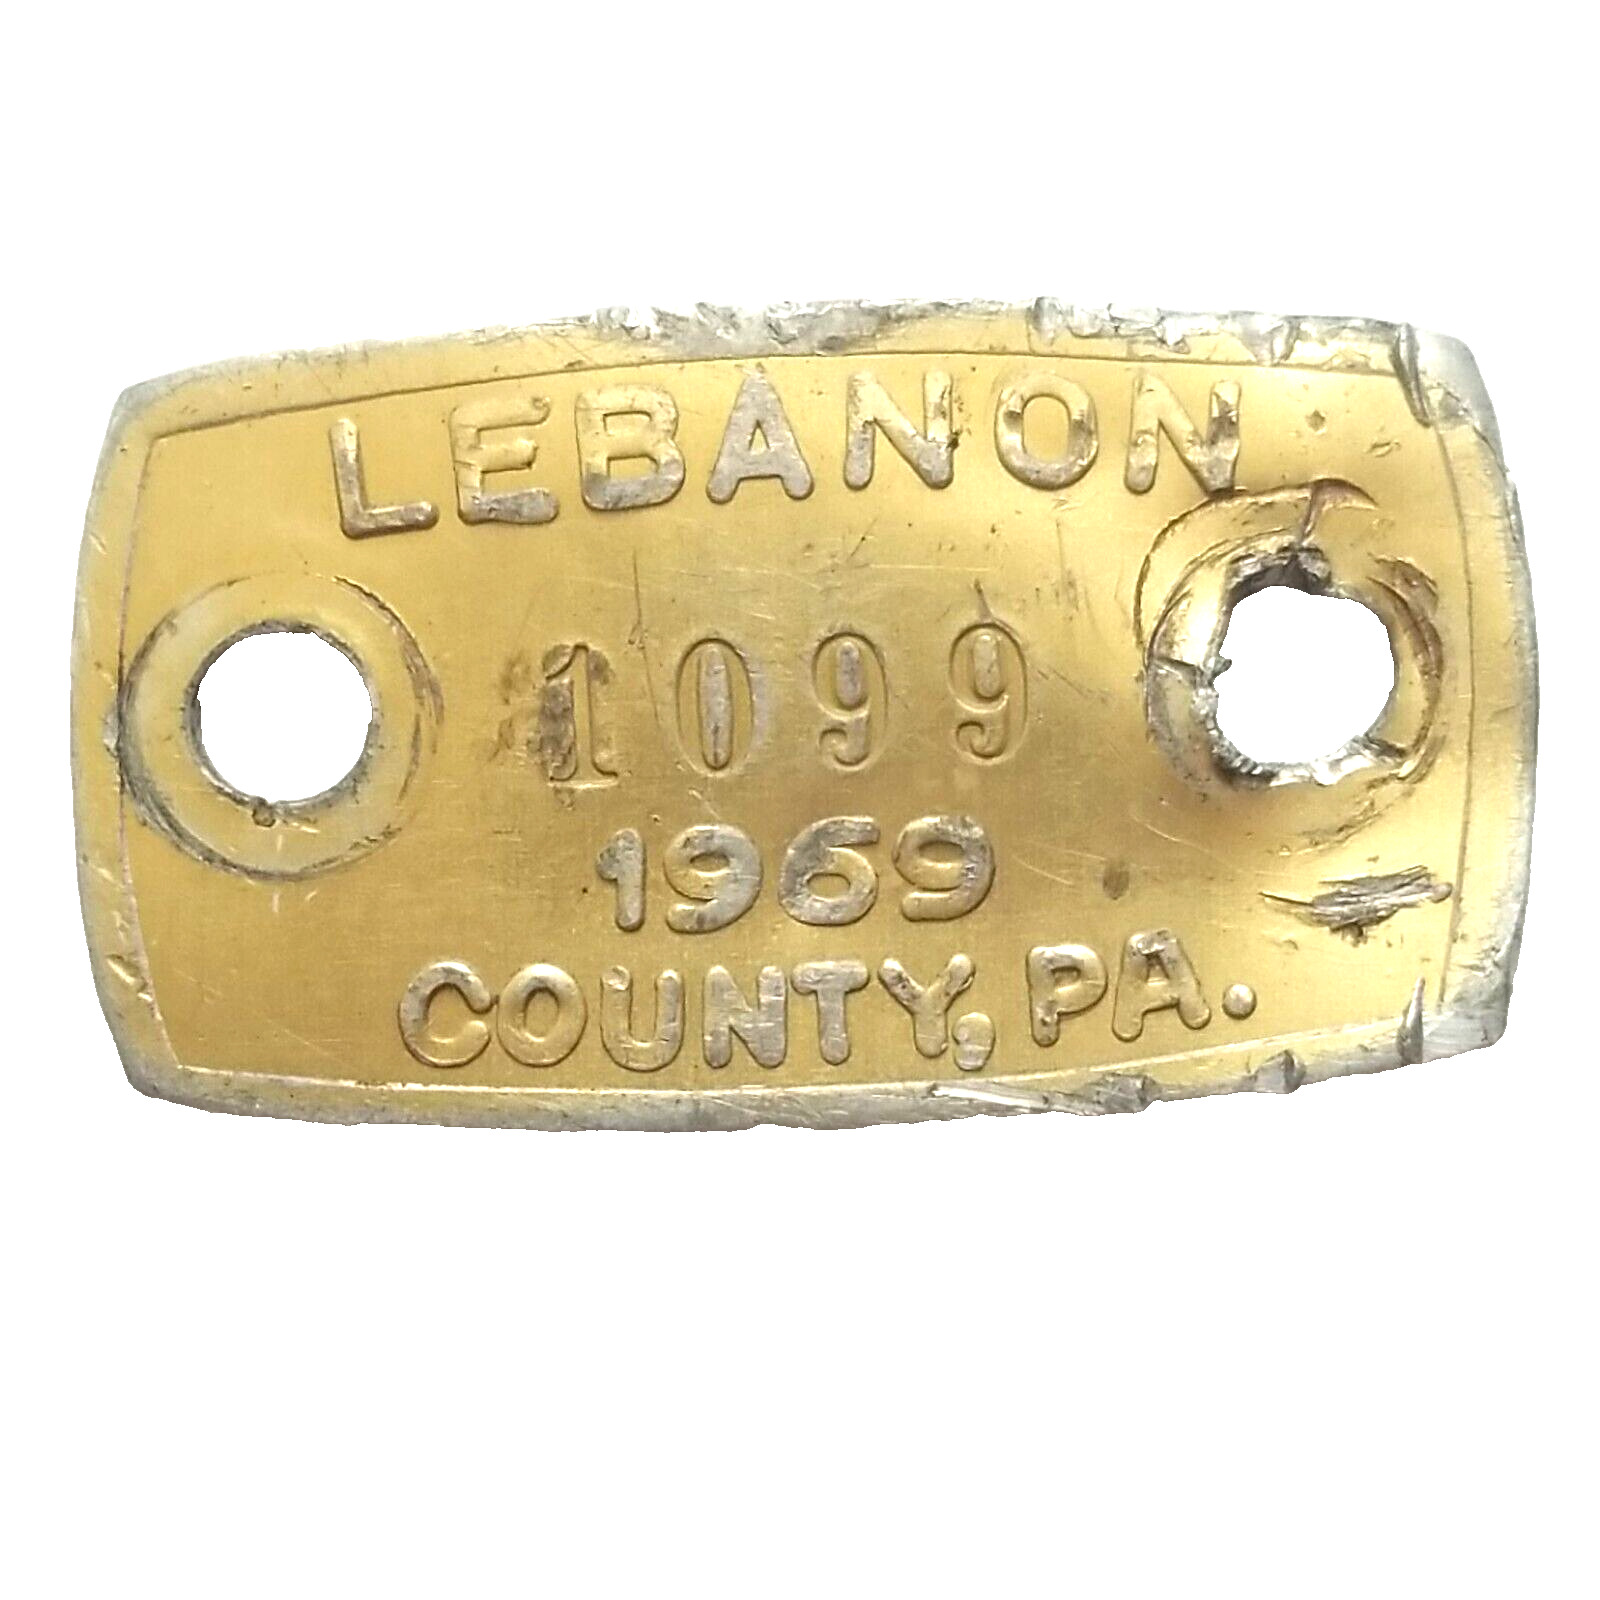 1969 Pennsylvania Dog Metal License Rabies Tag VINTAGE LEBANON COUNTY PA - #1099